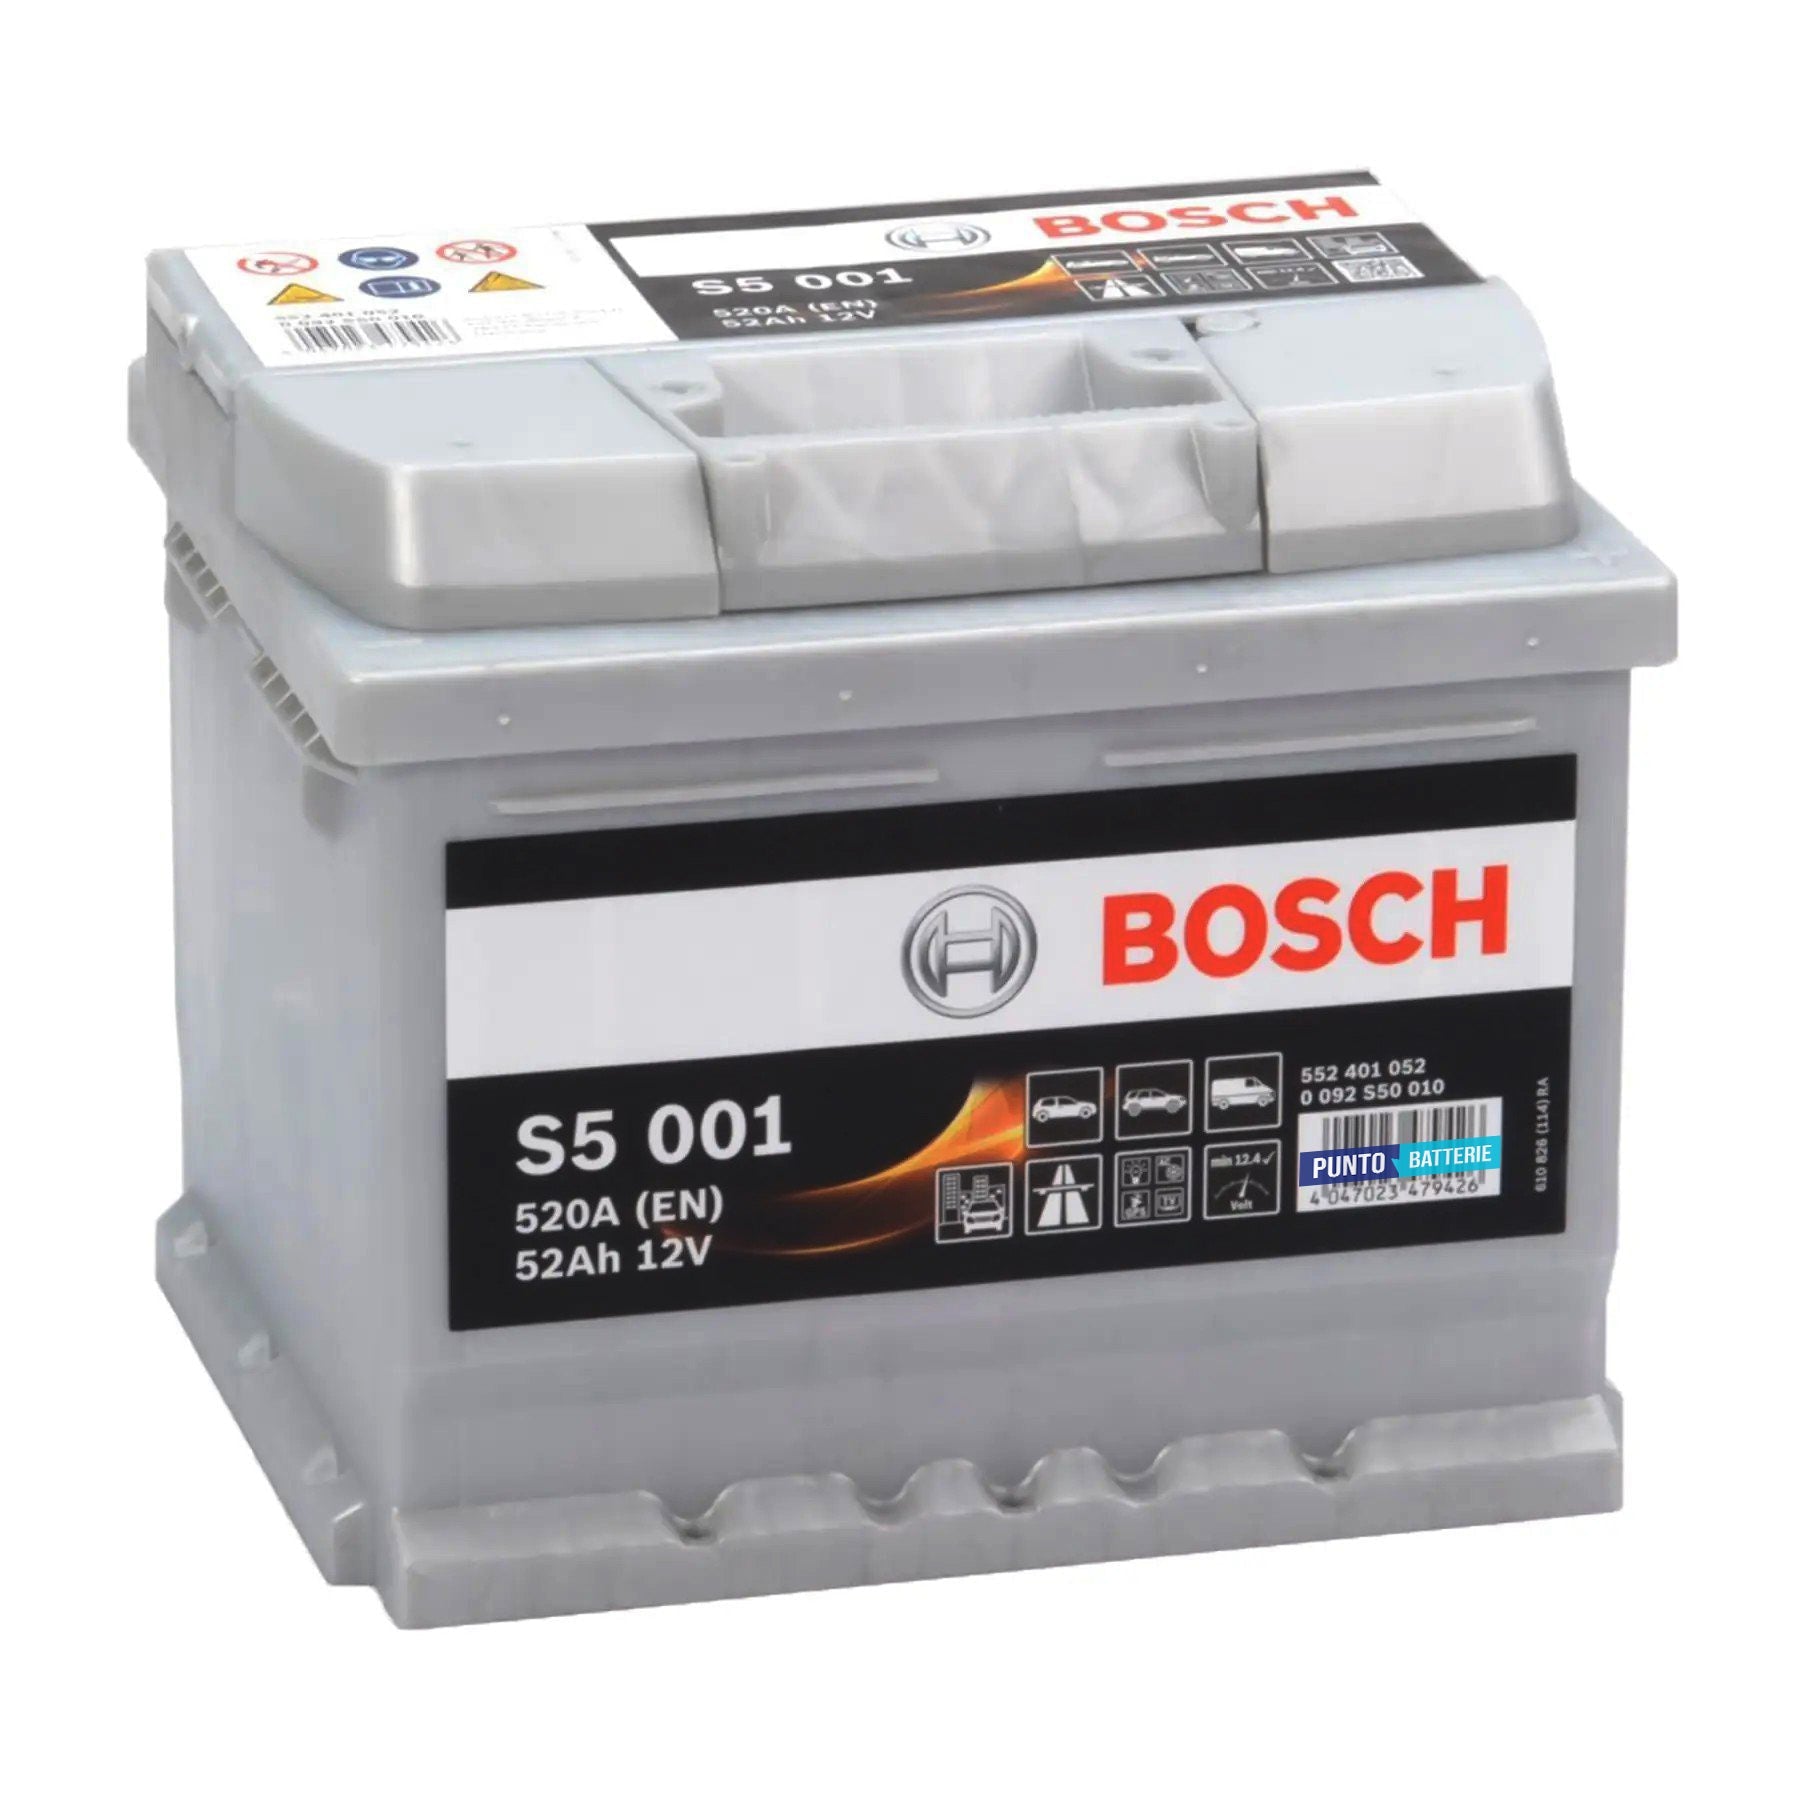 Batteria originale Bosch S5 S5 001, dimensioni 207 x 175 x 175, polo positivo a destra, 12 volt, 52 amperora, 520 ampere. Batteria per auto e veicoli leggeri.